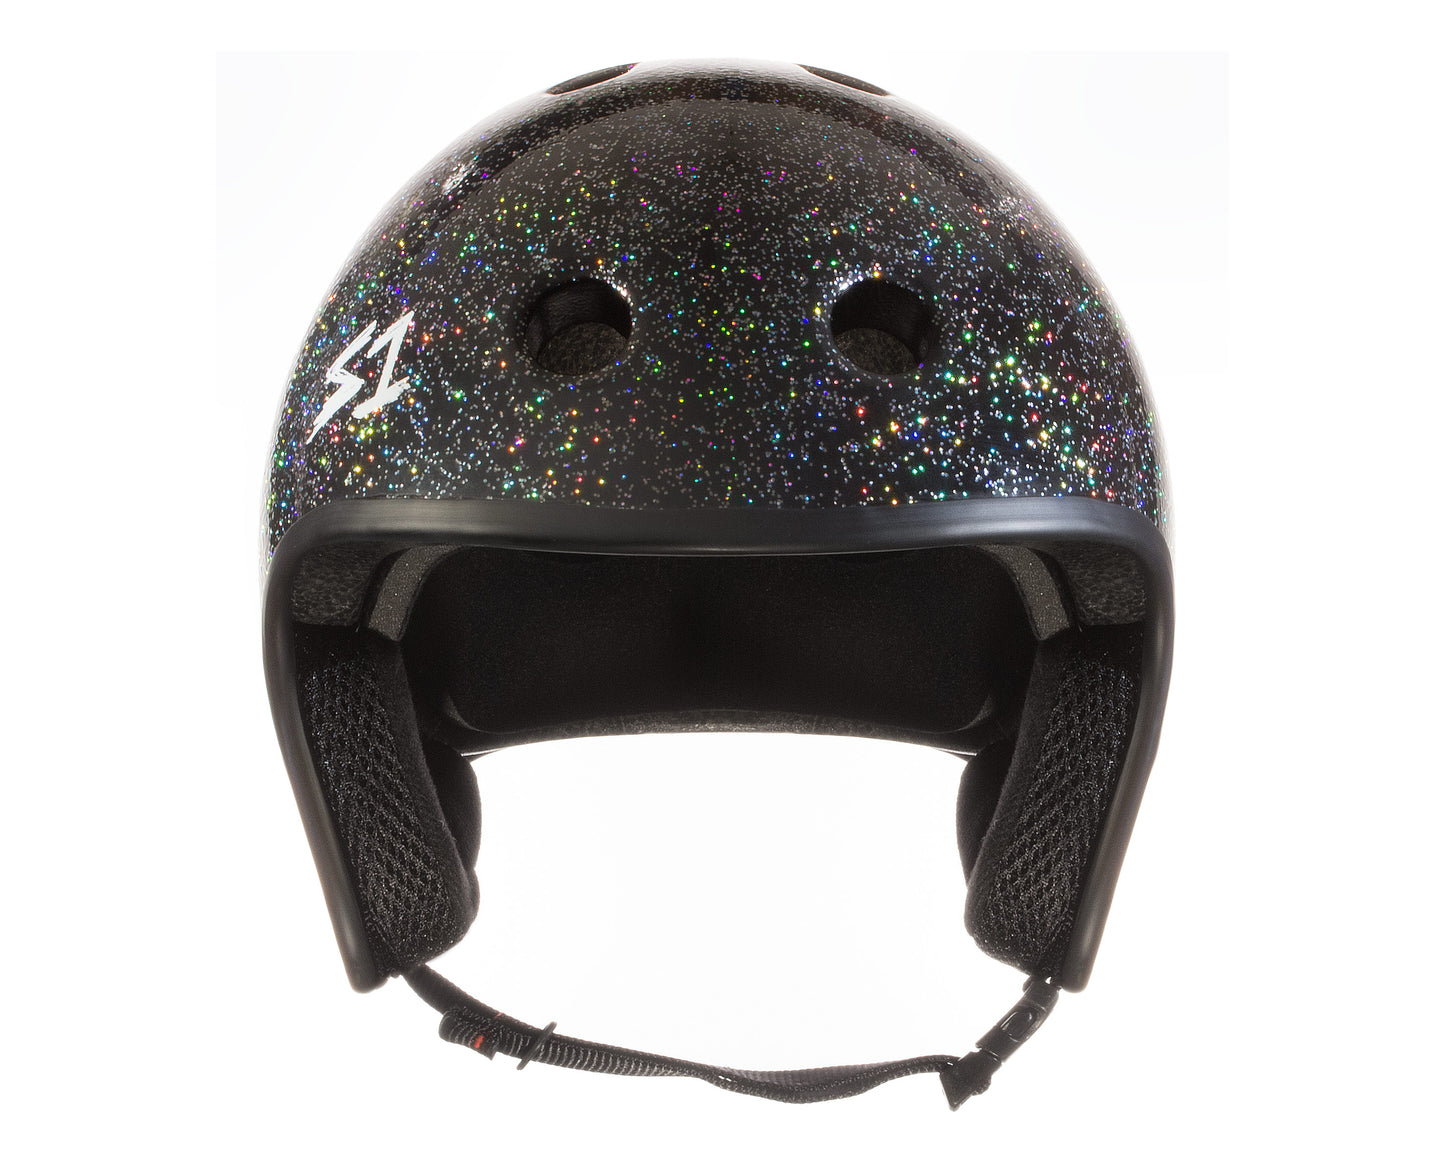 S1 Retro Lifer Helmet - Black Gloss Glitter